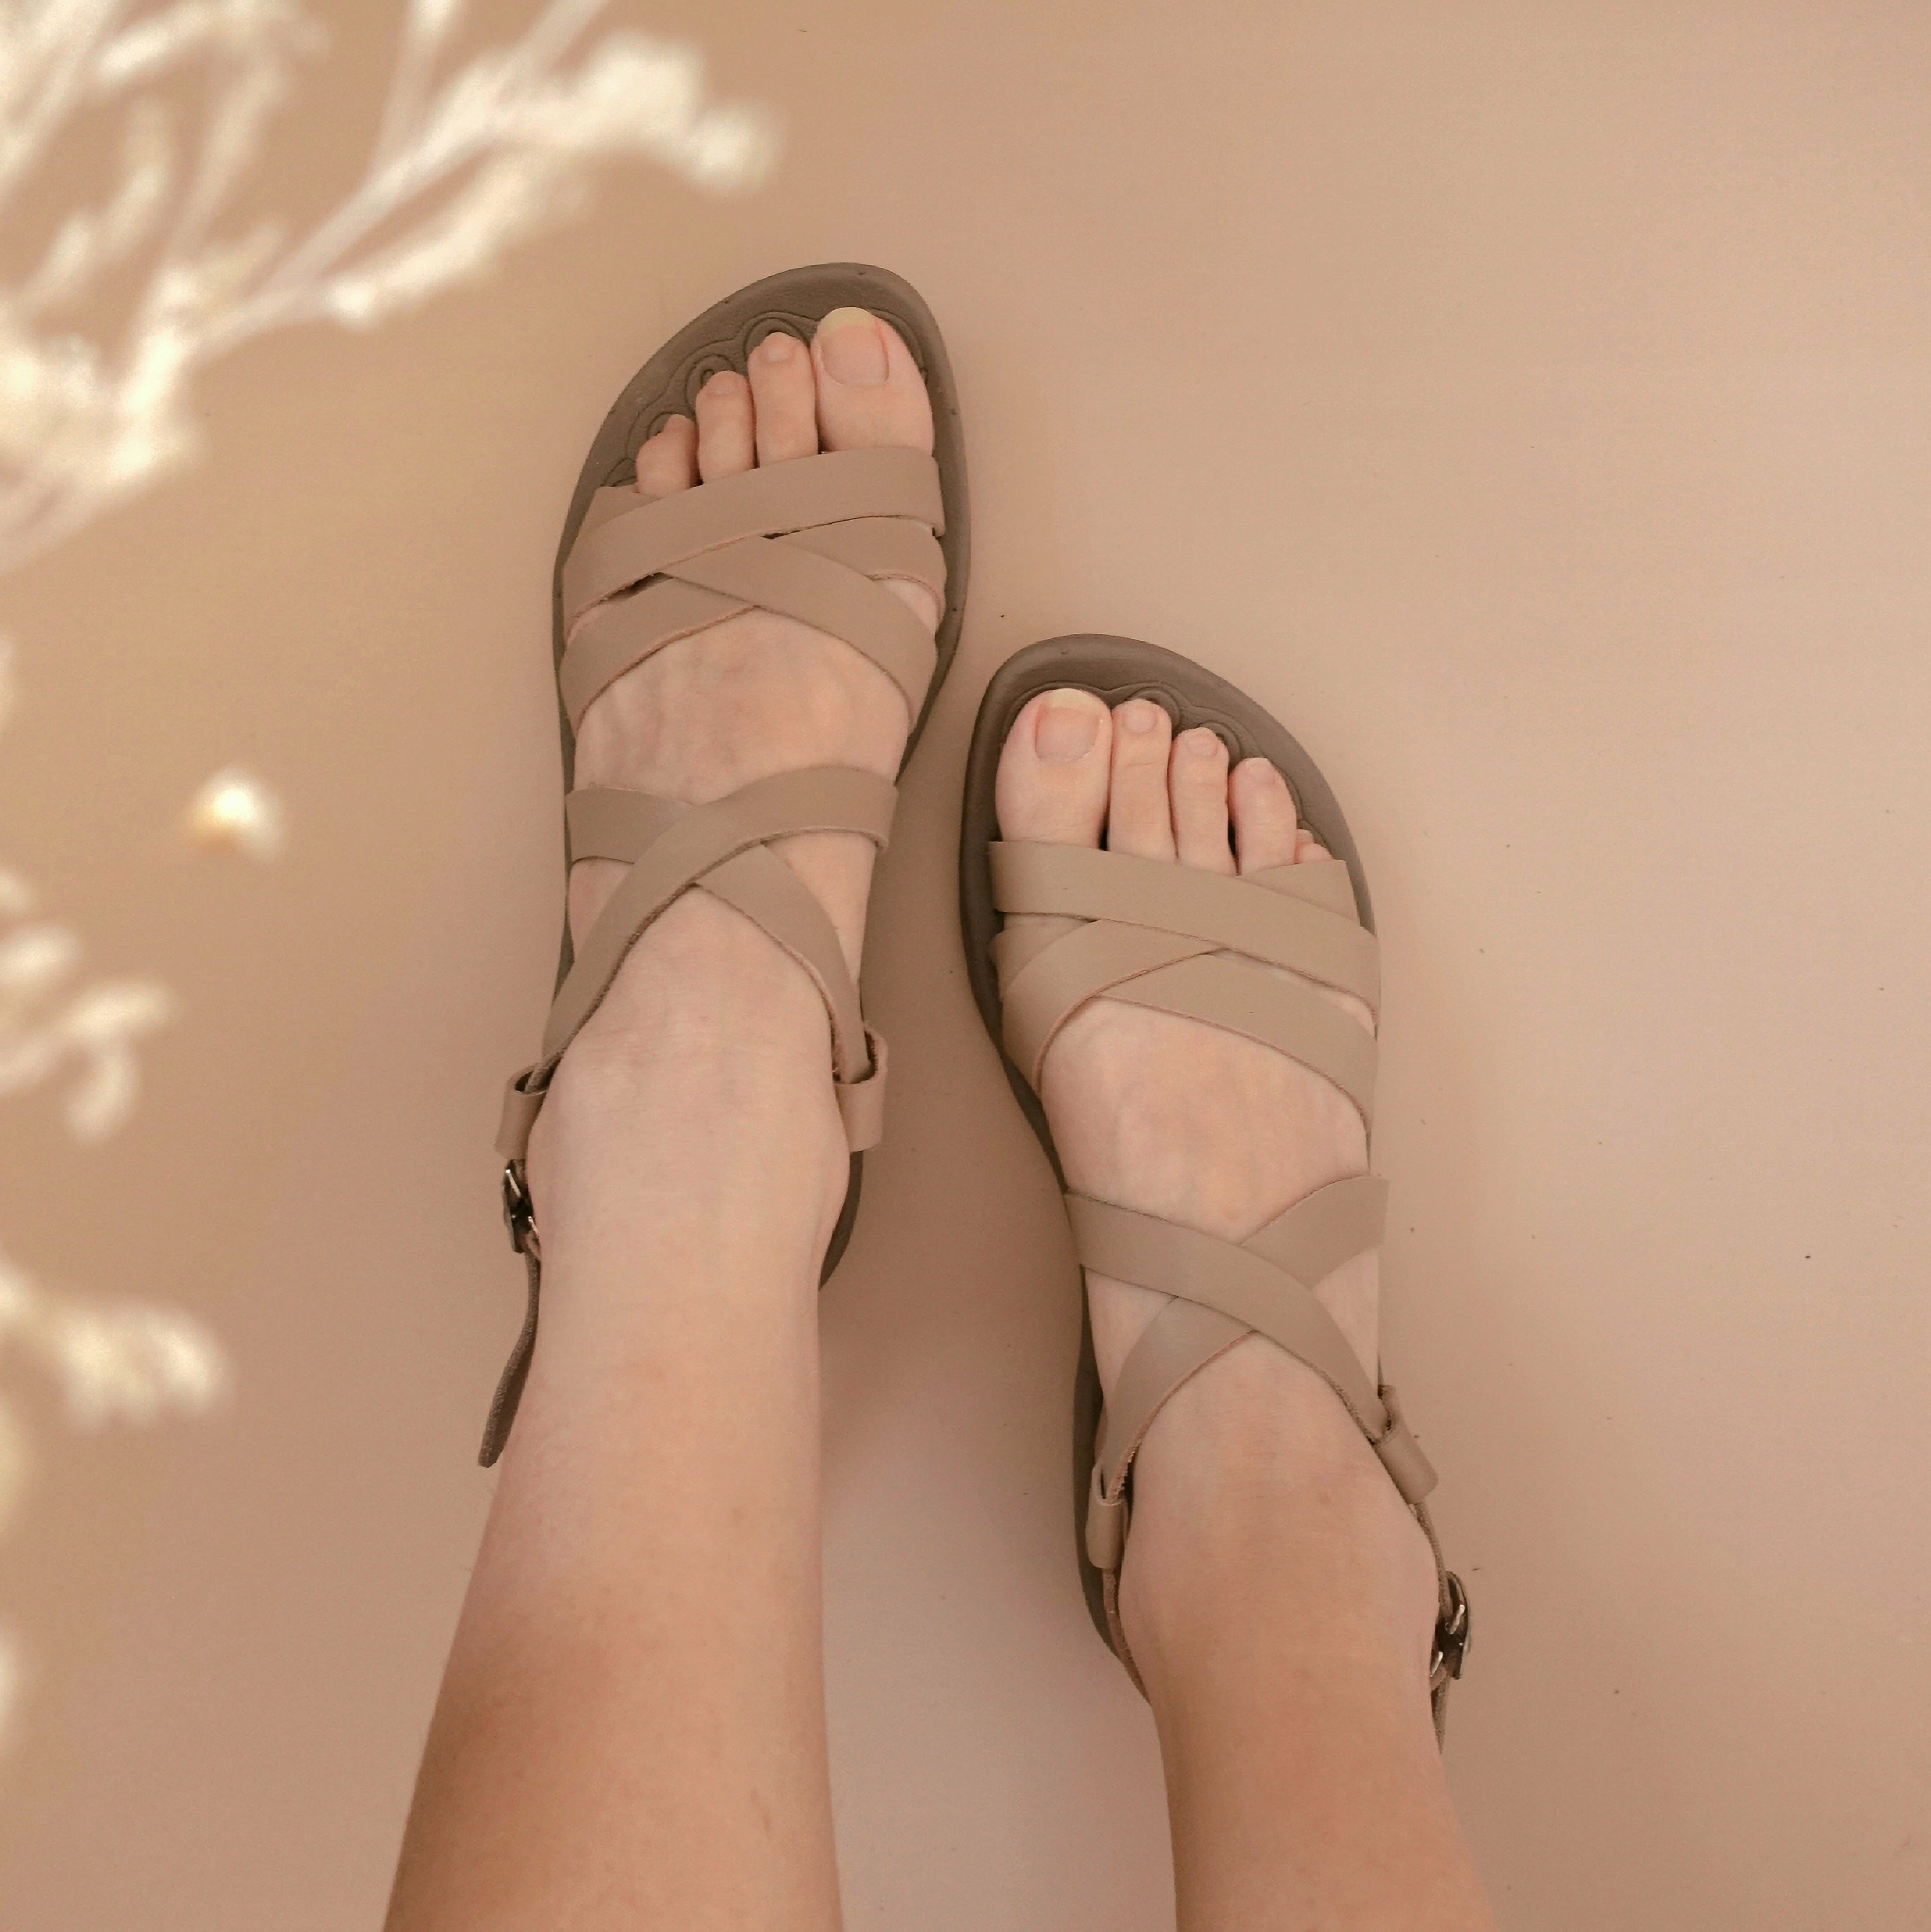 Alana in Nude - Sandals - Mercino